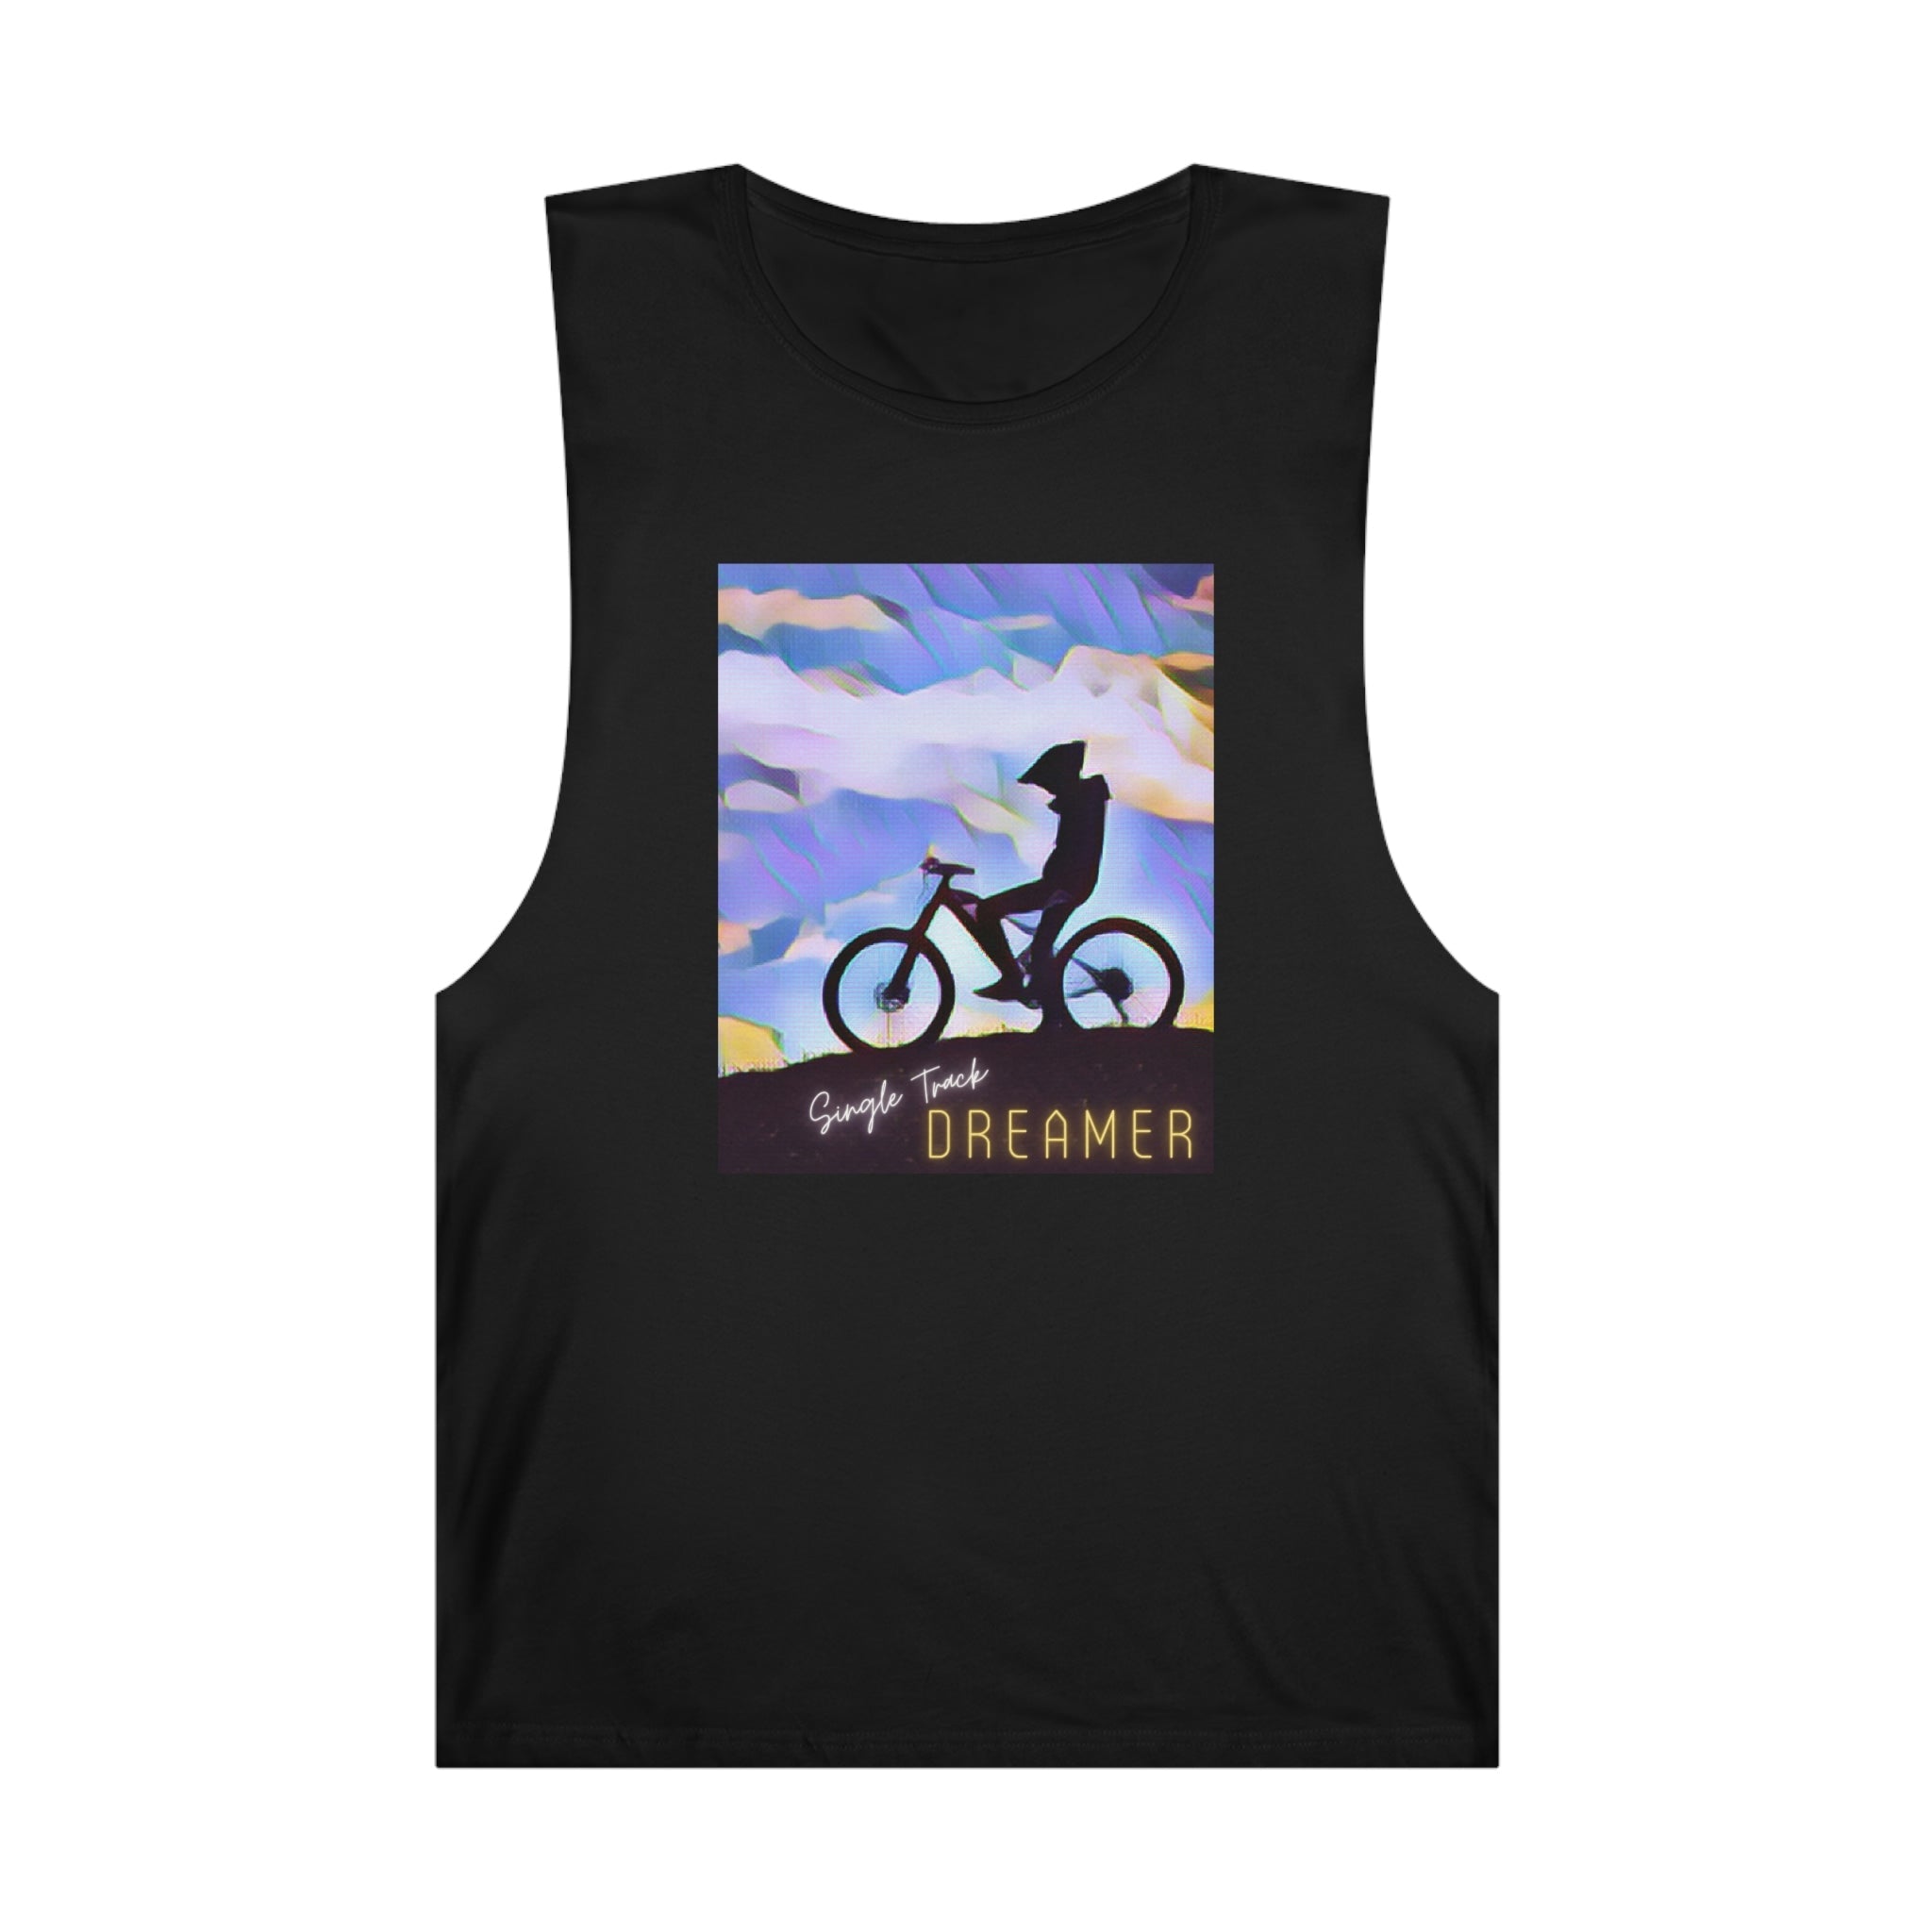 Sleeveless Shirt - Single Track Dreamer - Single Track Dreamer